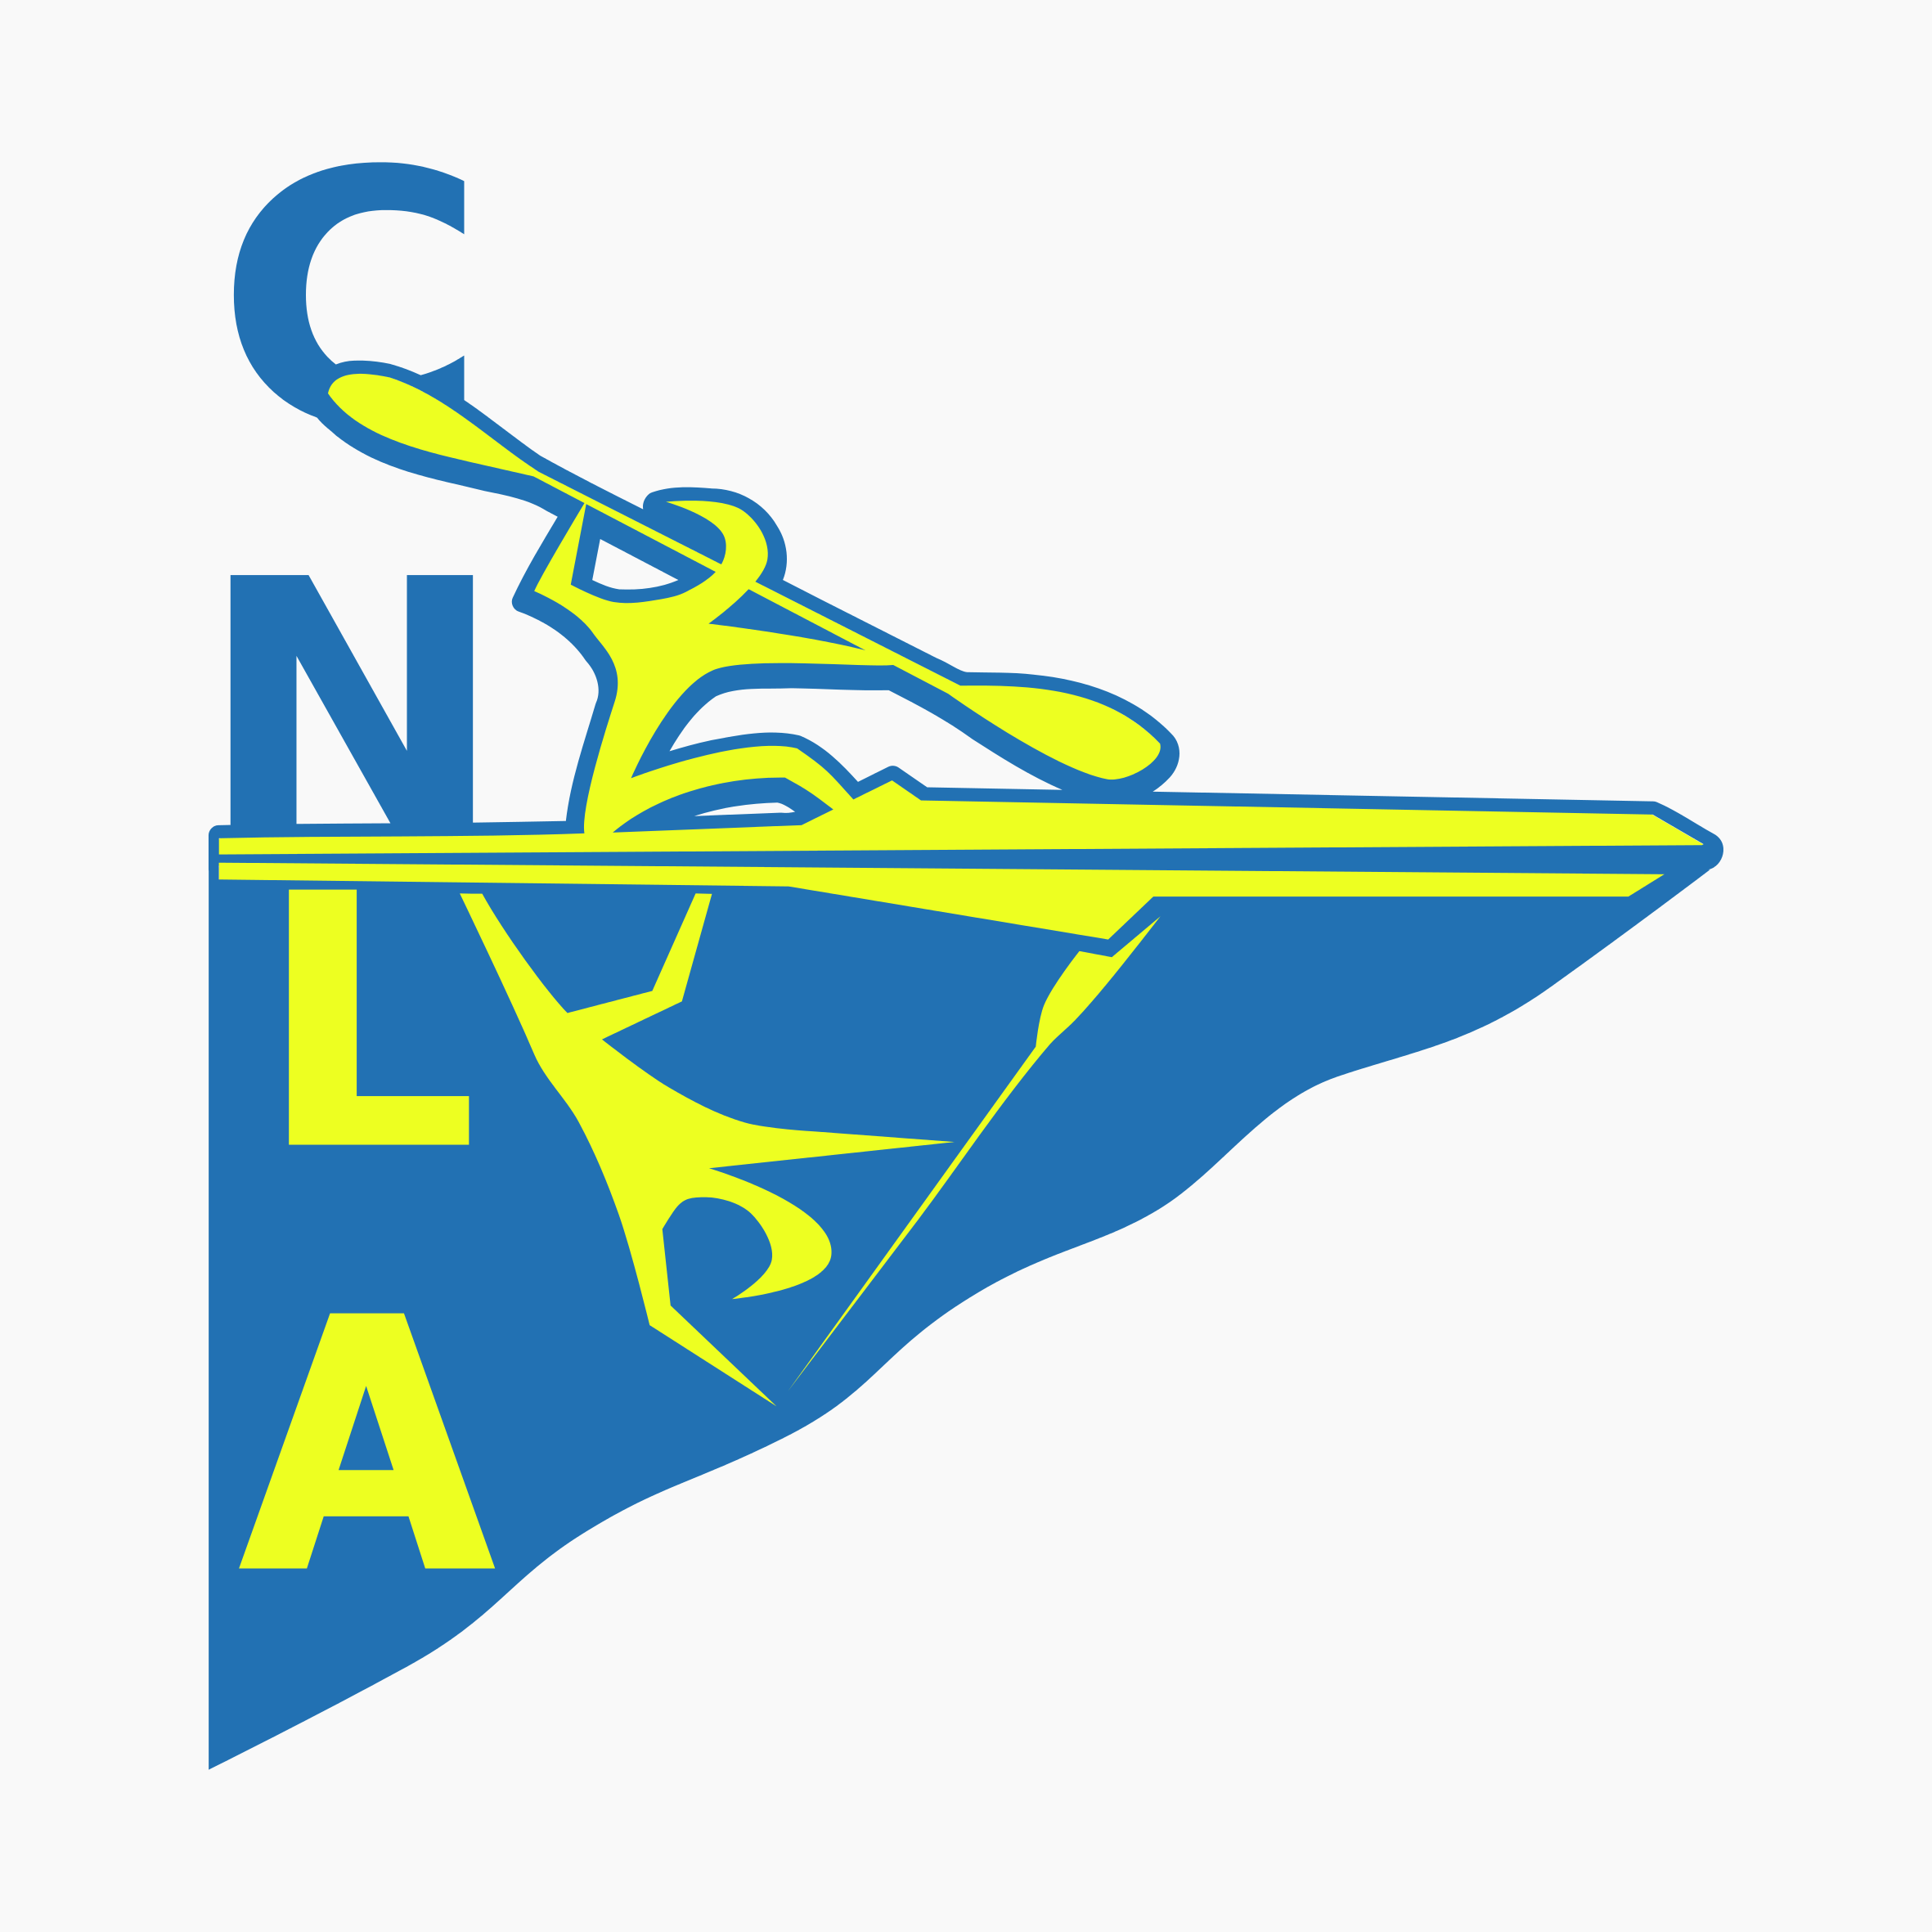 CNLA - Clube Náutico do Litoral Alentejano